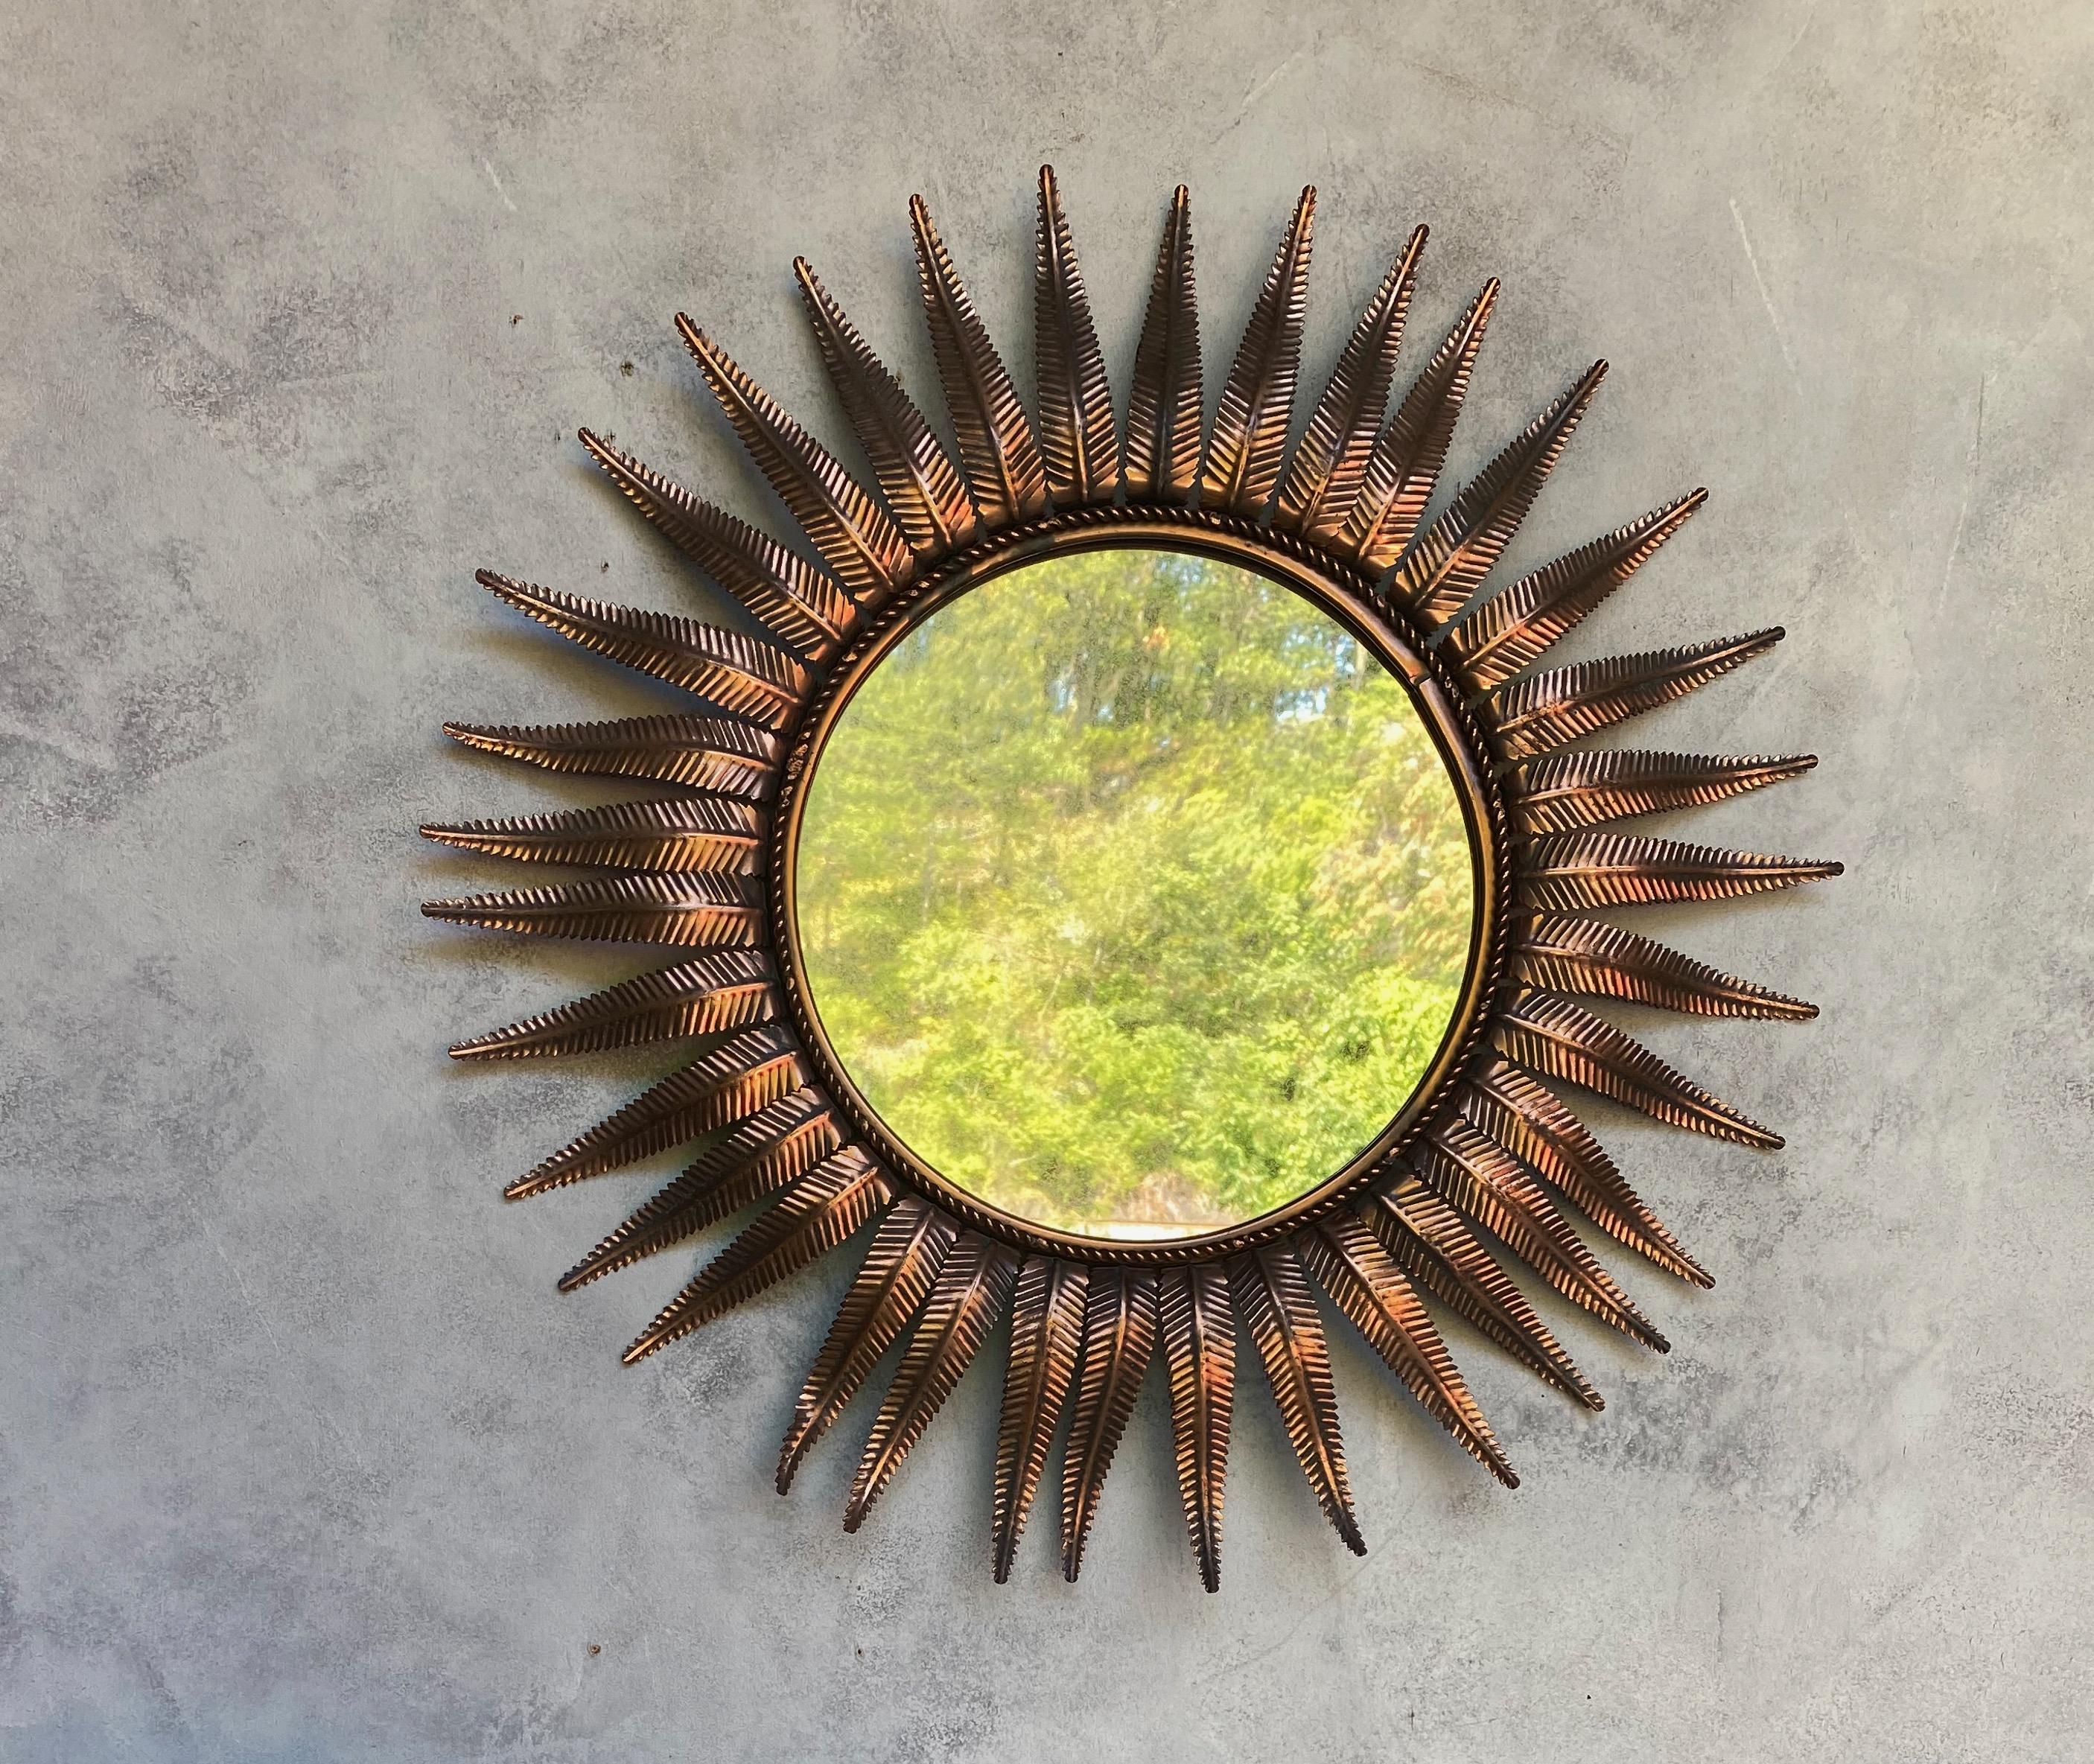 Un élégant miroir soleil espagnol cuivré fabriqué en Espagne dans les années 1950. Cette pièce moderne du milieu du siècle est dotée d'un superbe cadre en métal cuivré représentant des feuilles de fougère stylisées dans un motif ensoleillé. Le